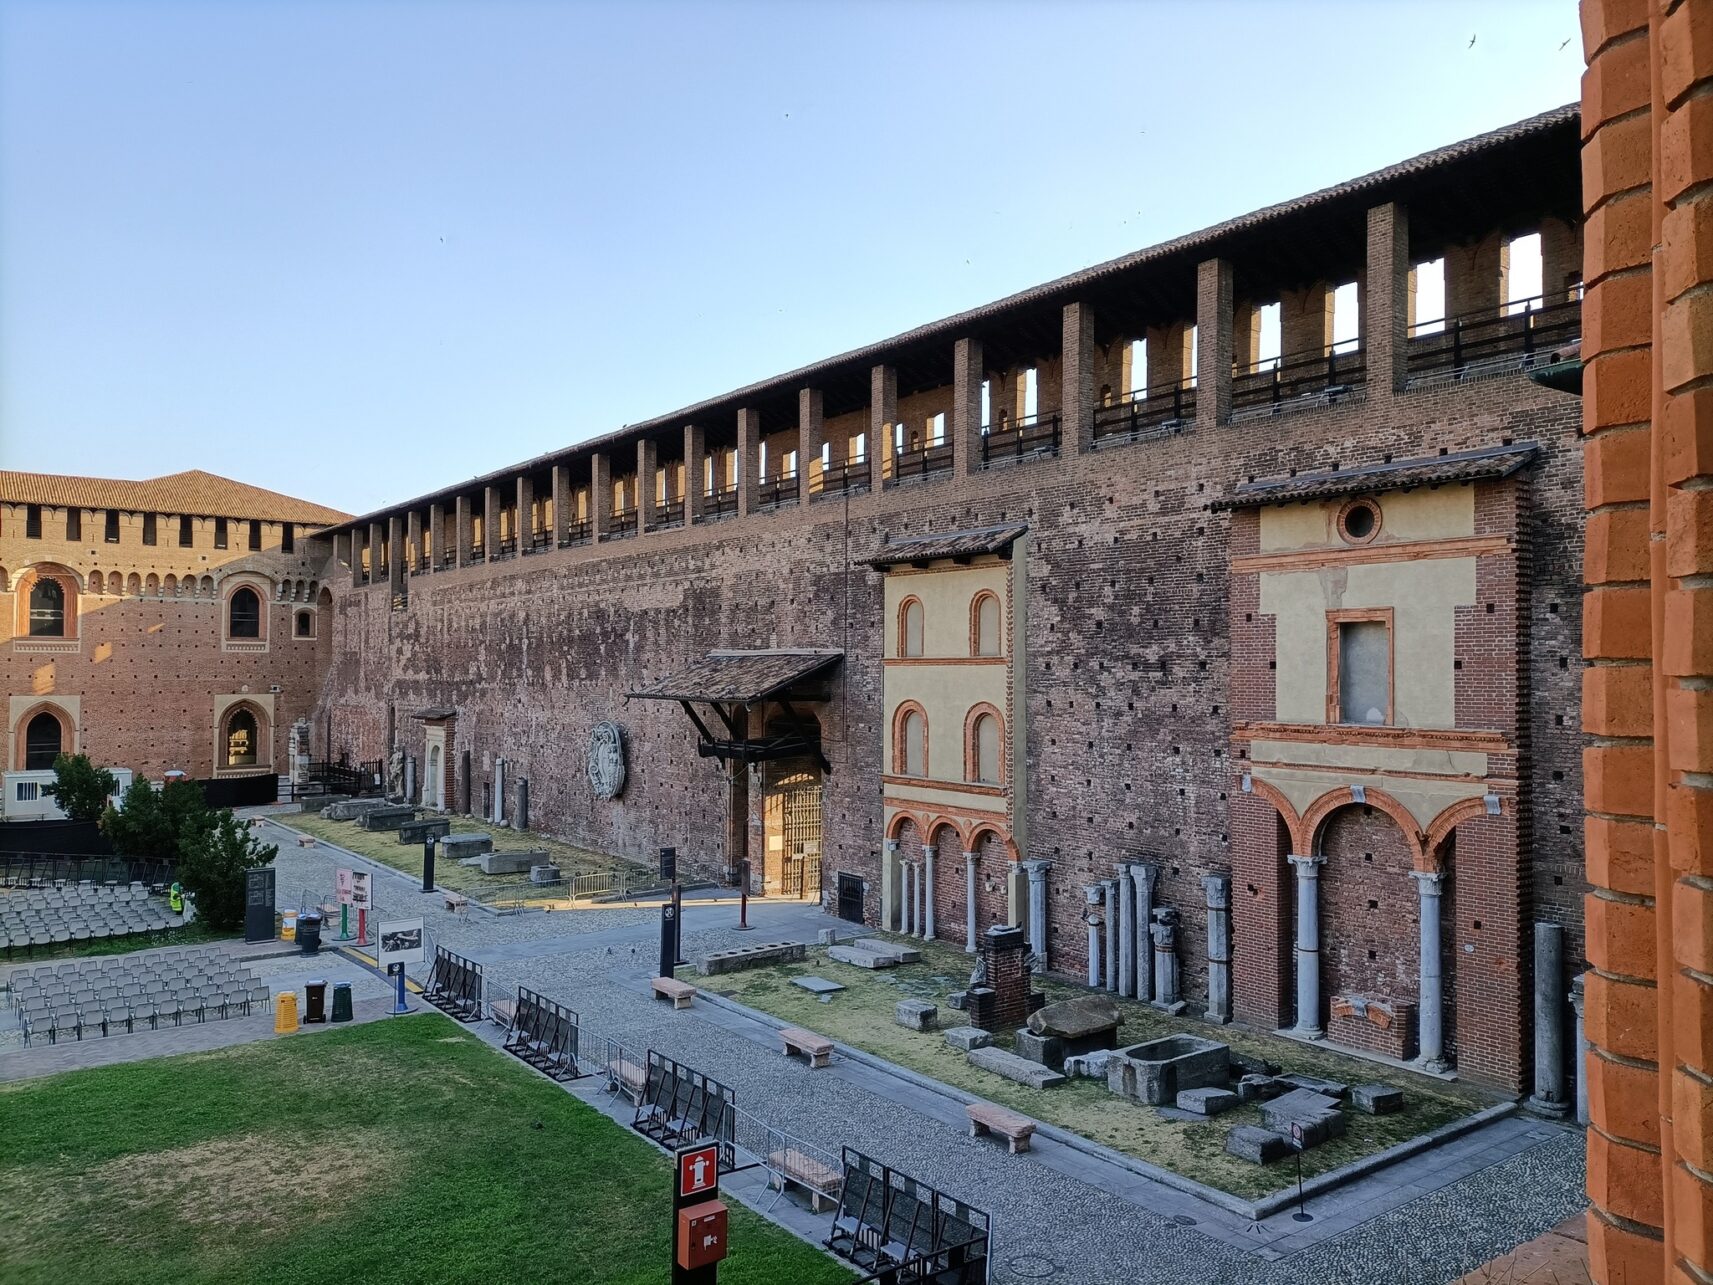 Castello Sforzesco in Mailand, Italien.